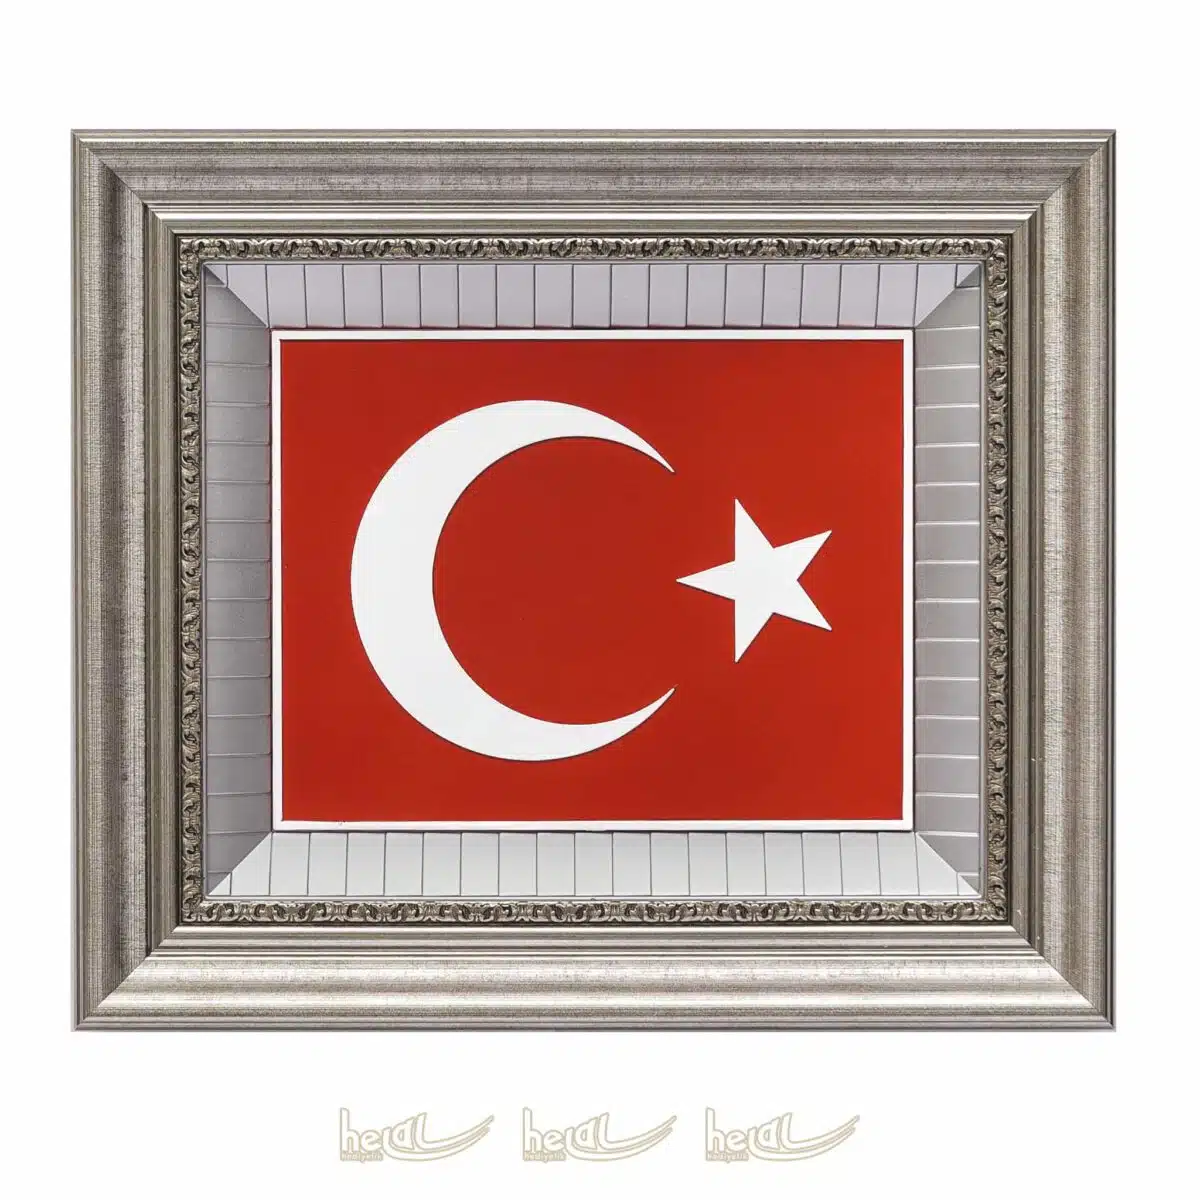 45x52cm Türk Bayrağı Çerçeveli Tablo Bayraklı Tablolar